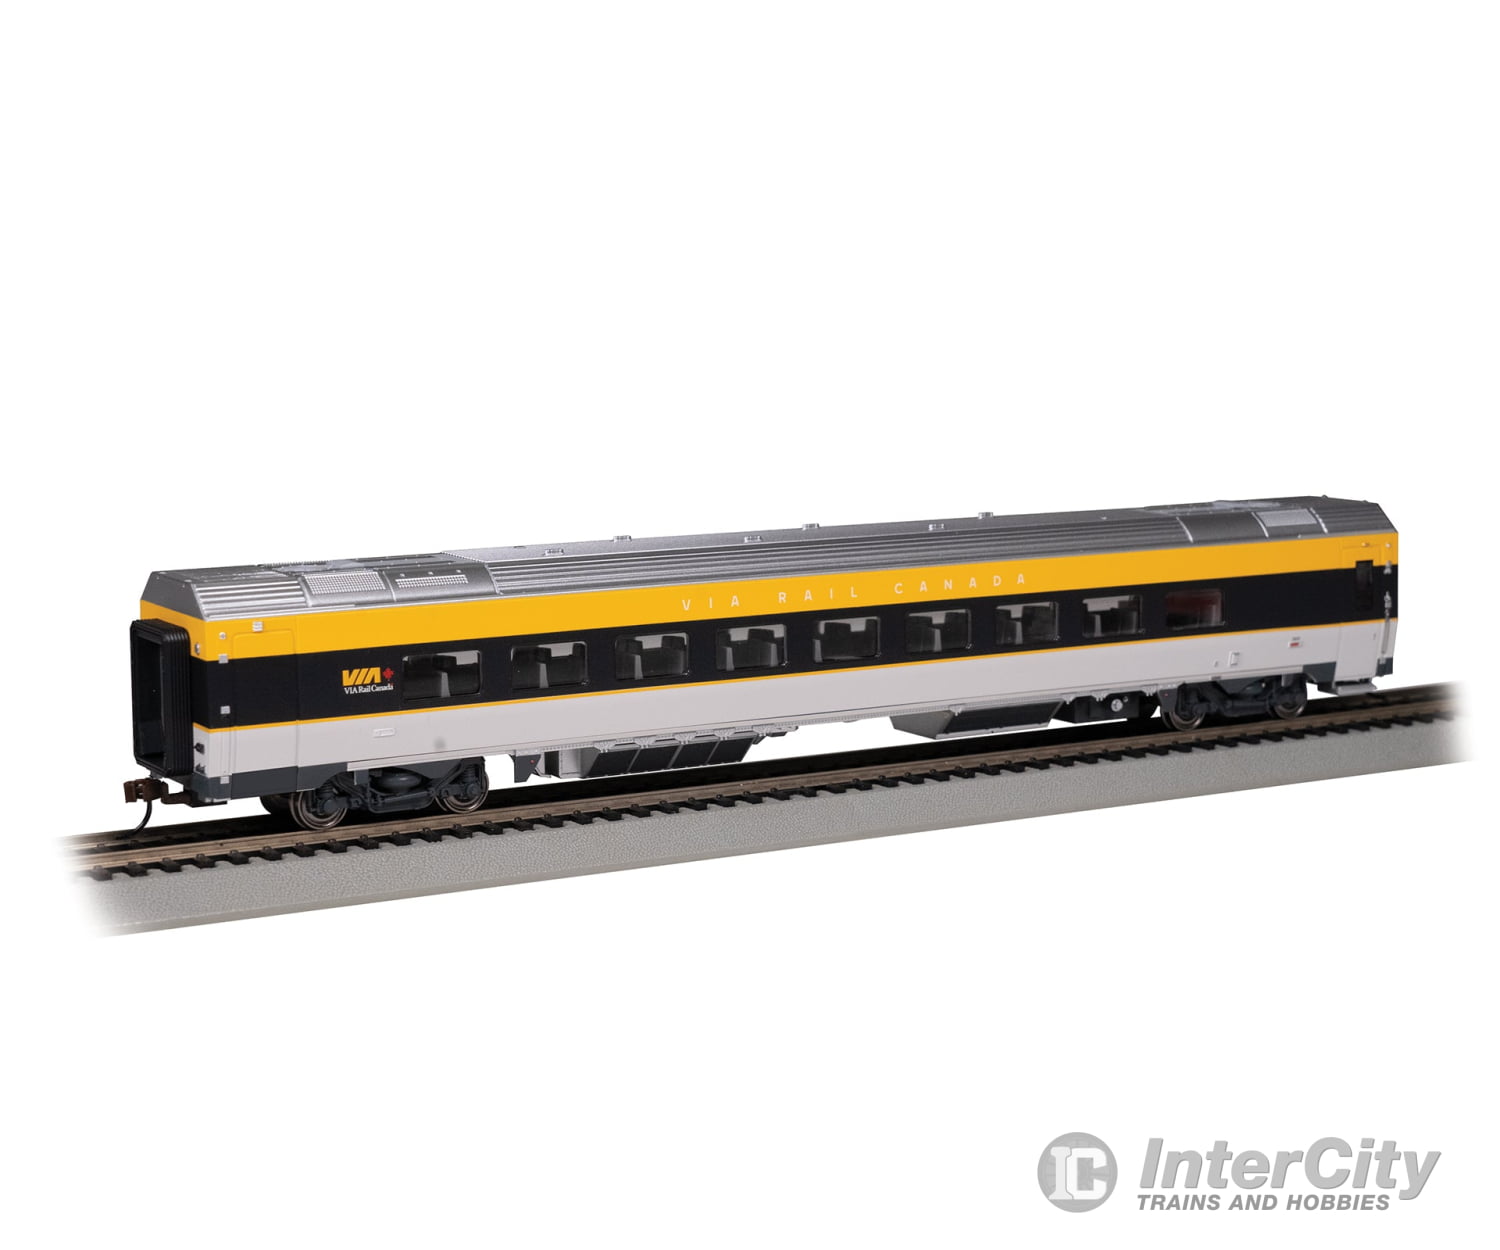 Bachmann 74505 Siemens Venture Coach - Via Version Ready To Run - - Rail Canada #2800 (Gray Black